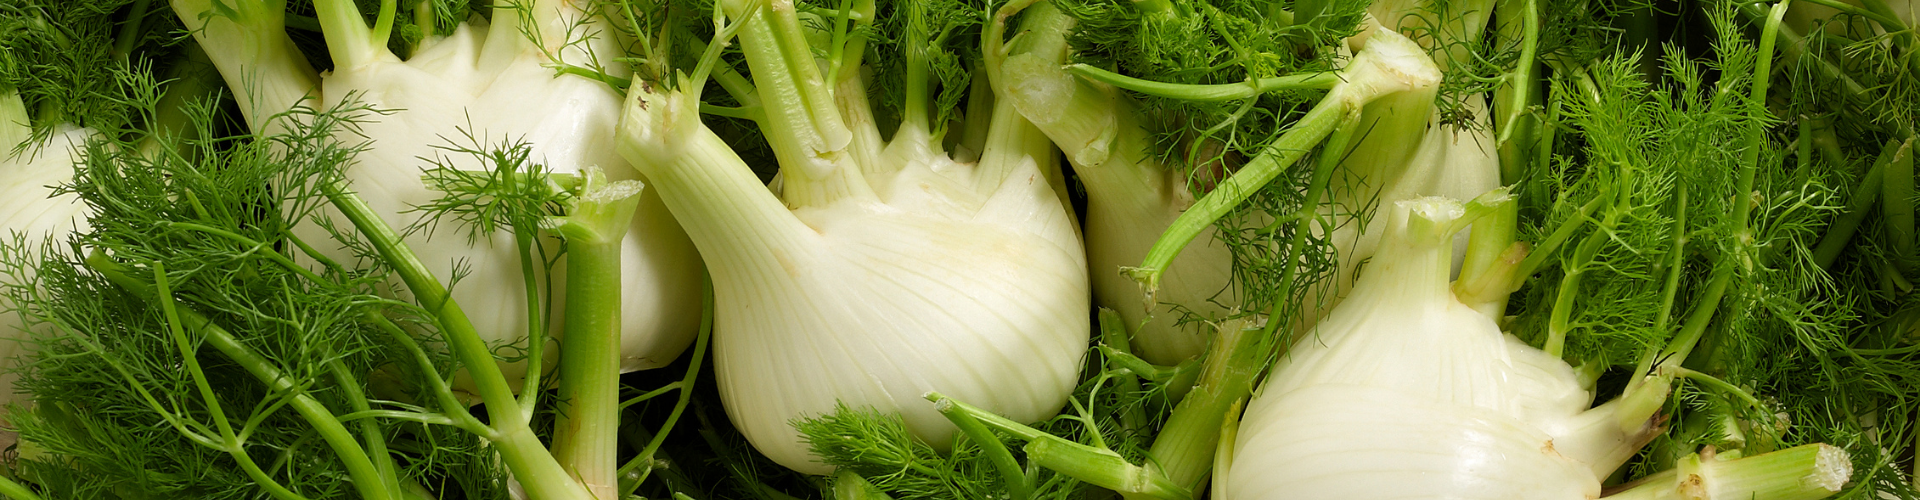 7 légumes qui poussent à l'infini - Blog - Dr. Jonquille & Mr. Ail